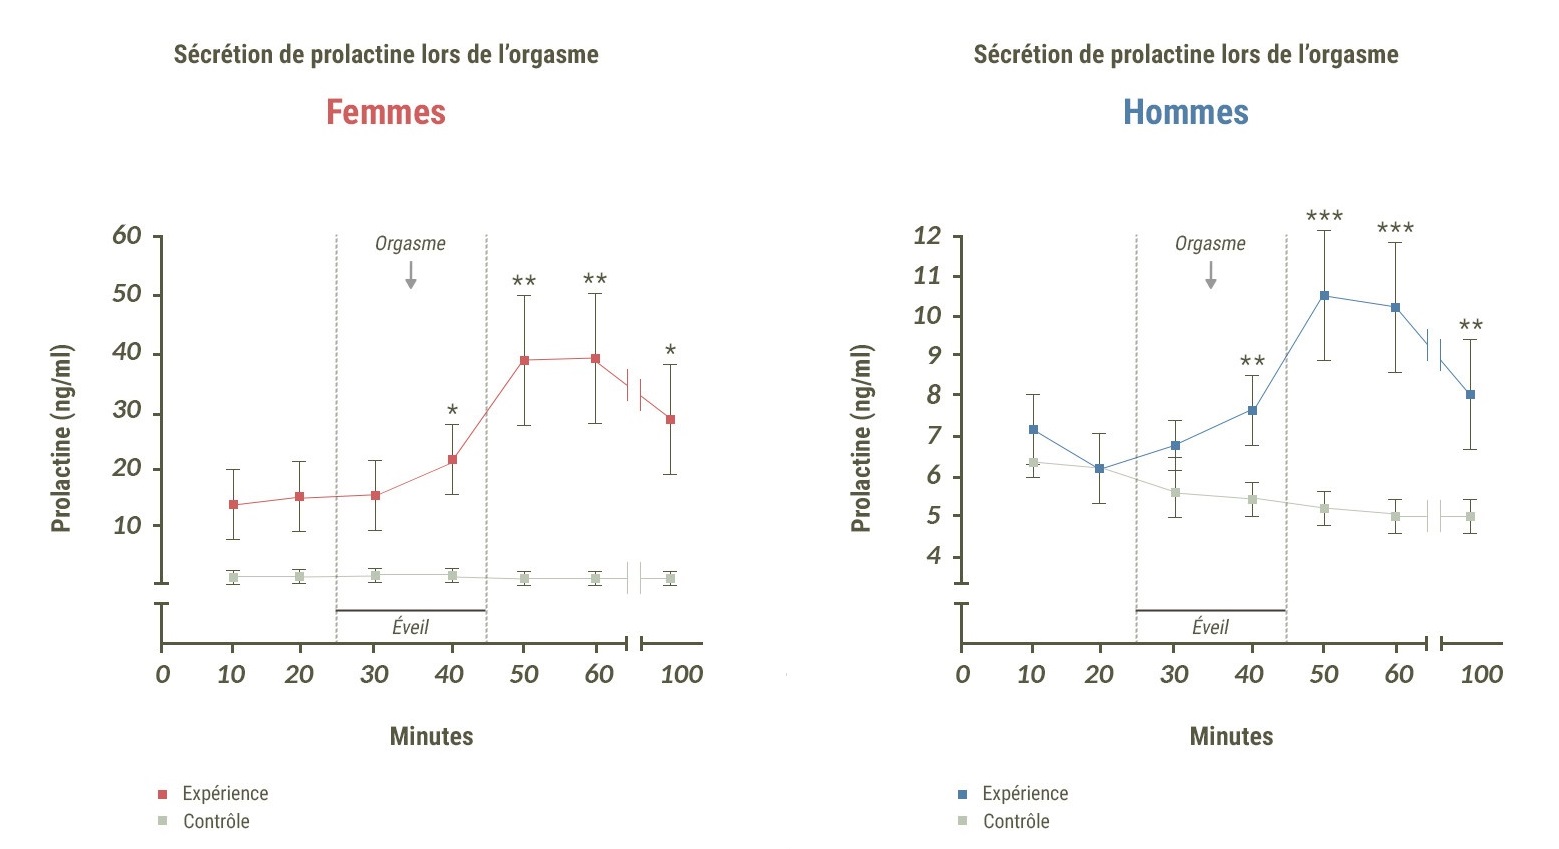 Deux schémas indiquant l'évolution de la sécrétion de prolactine lors de l'orgasme chez les femmes (à gauche) et les hommes (à droite).